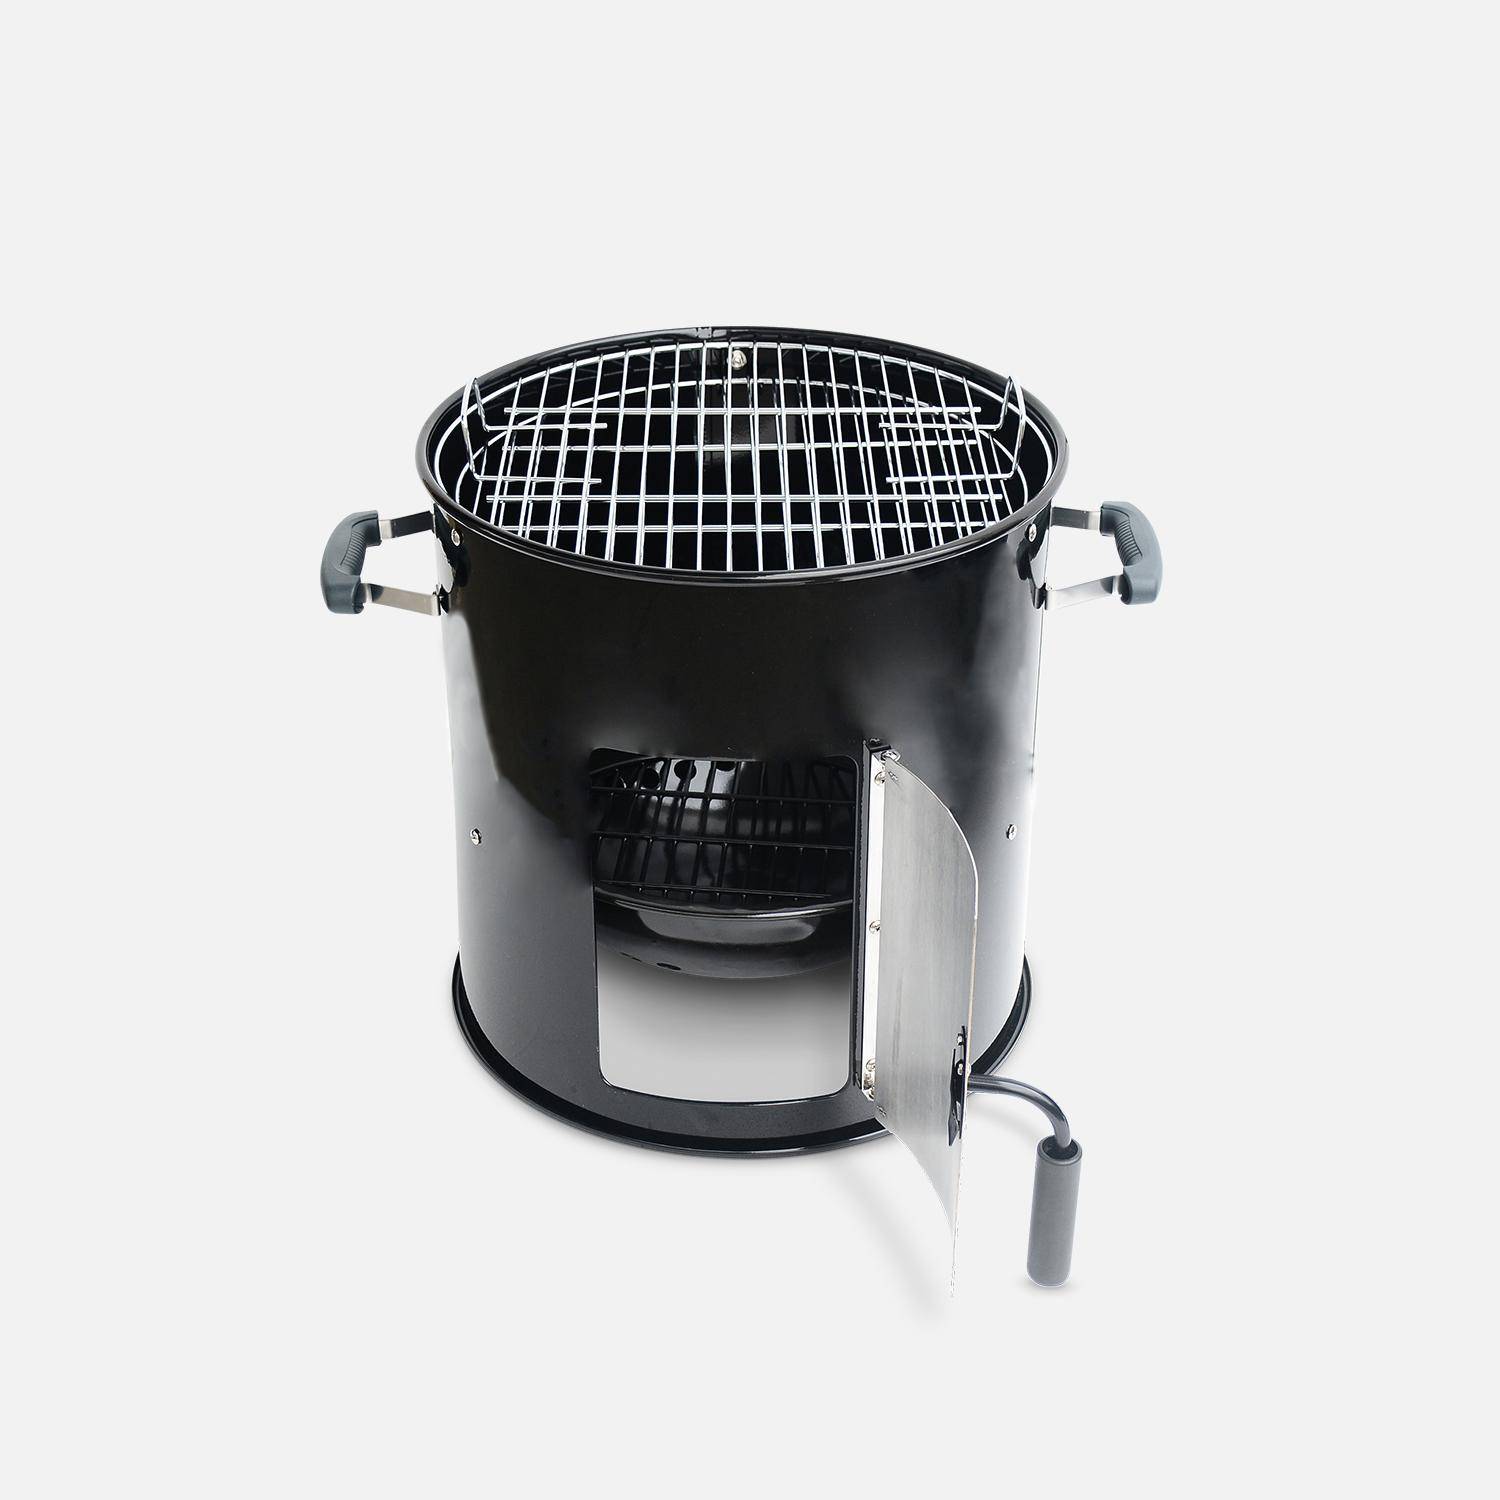 Barbacoa ahumador carbón – Juan – Smoker premium con aireadores, ahumador, gril, compartimento de ahumado negro Photo5